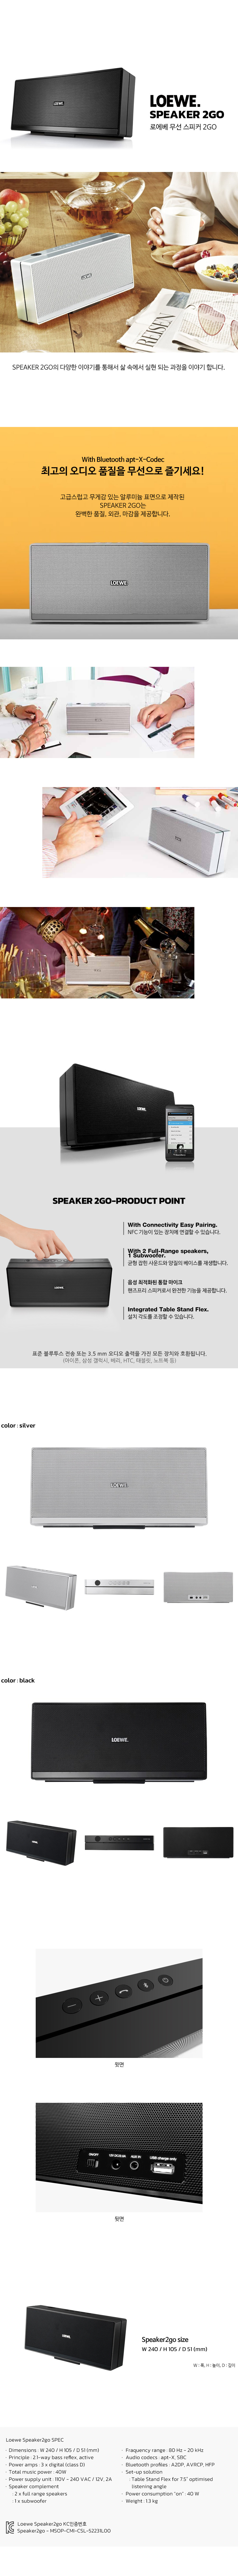 speaker2go.jpg